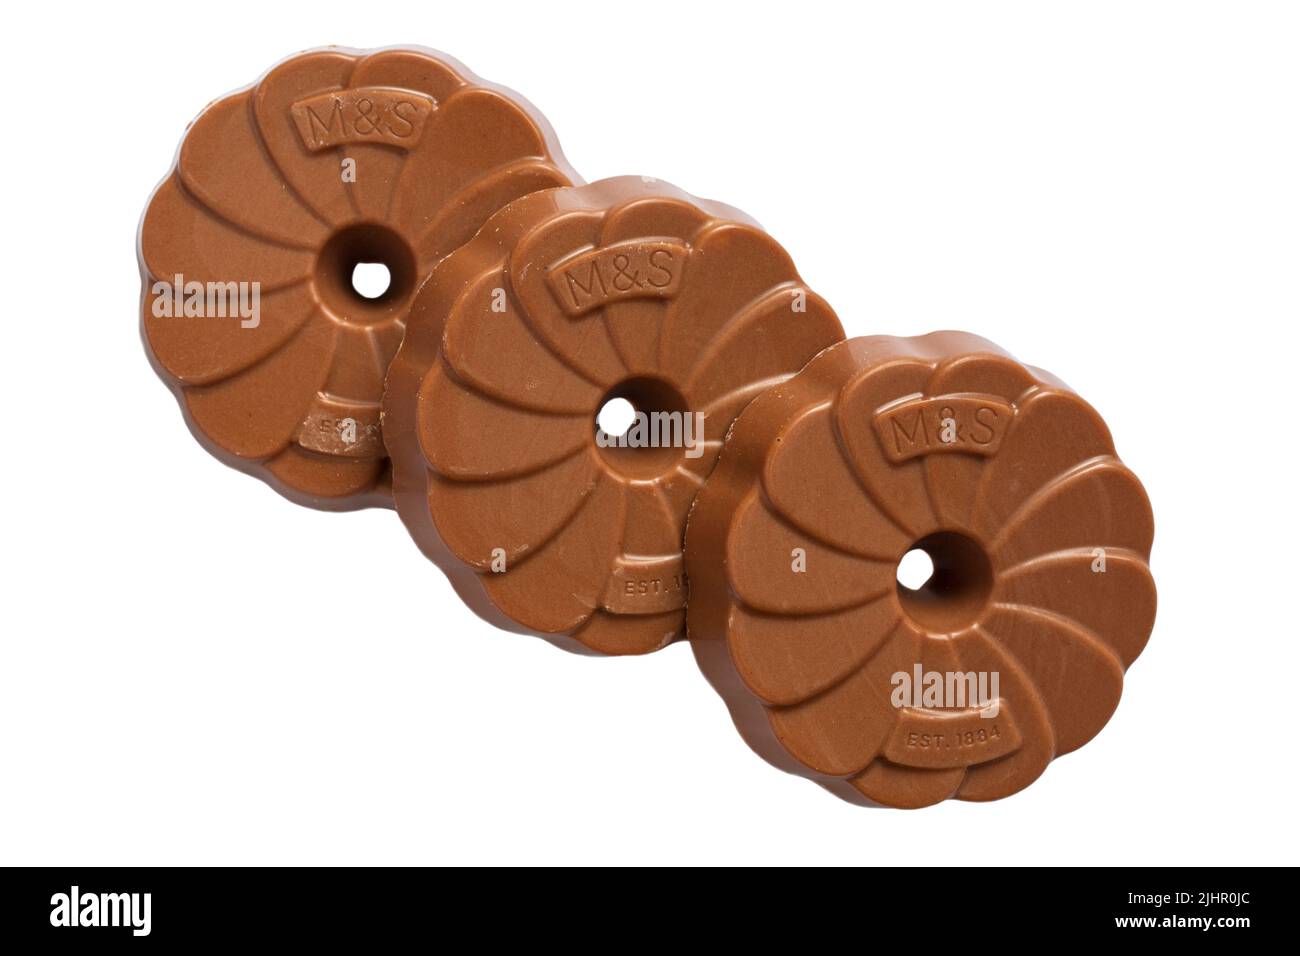 Drei 3 extrem schokoladige Milchschokolade rundet Kekse von M&S isoliert auf weißem Hintergrund ab Stockfoto